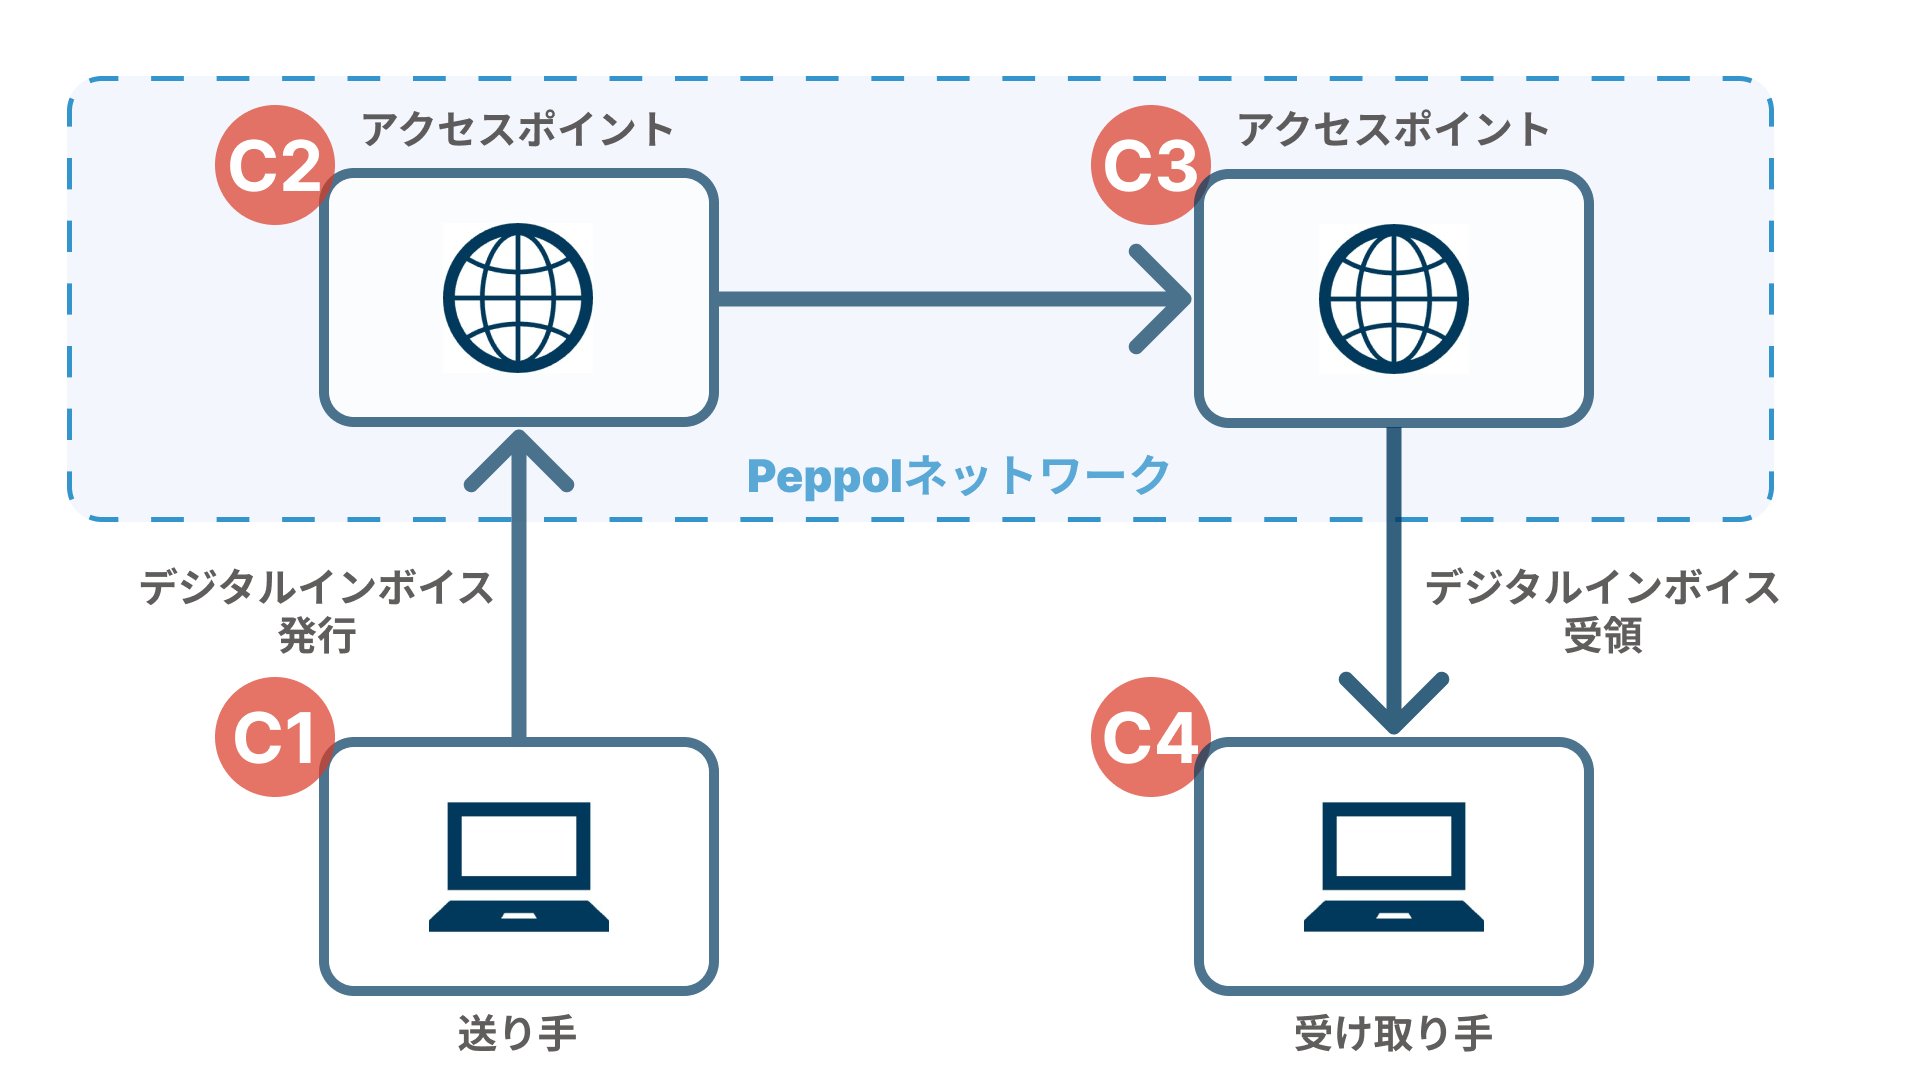 Peppol（ペポル）ネットワークでのデジタルインボイスのやフロー